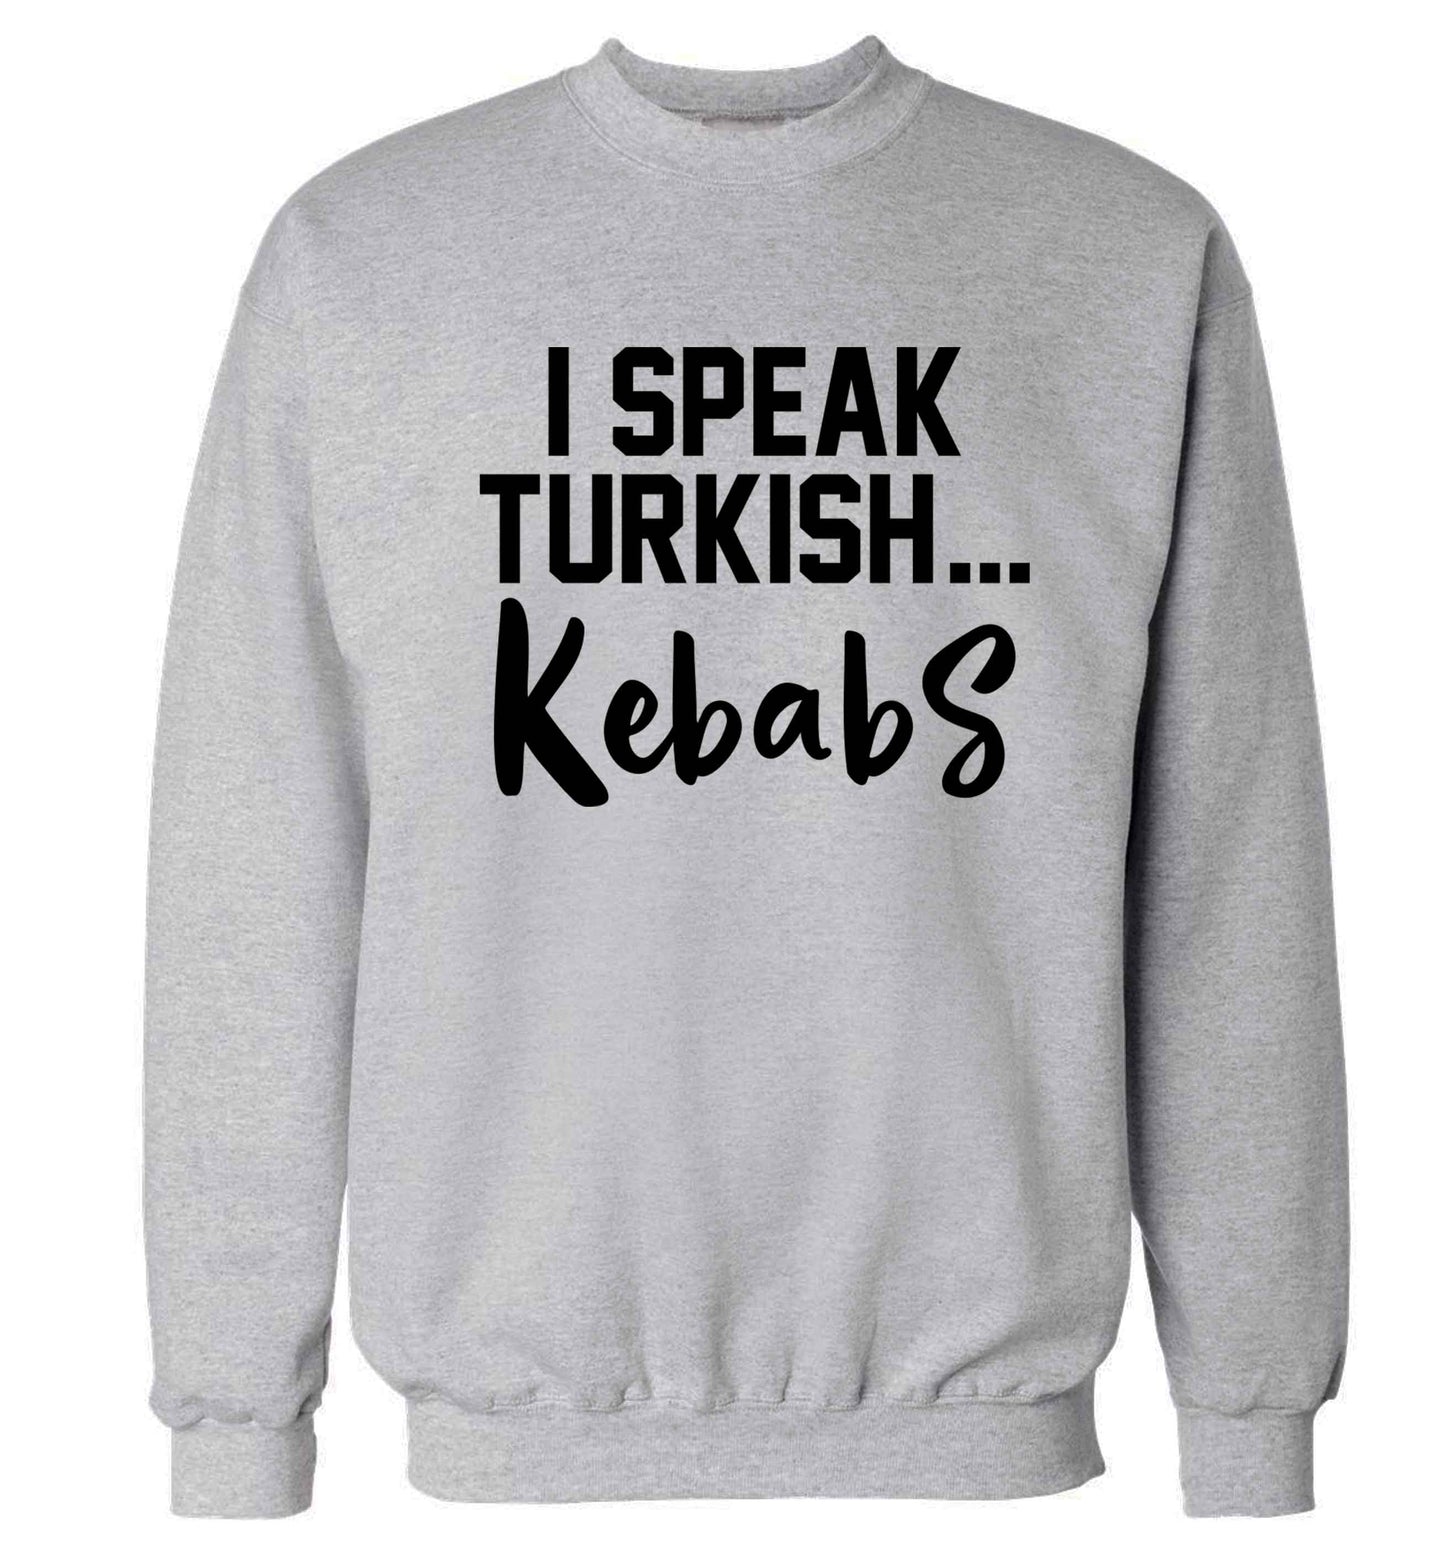 I speak Turkish...kebabs Adult's unisex grey Sweater 2XL